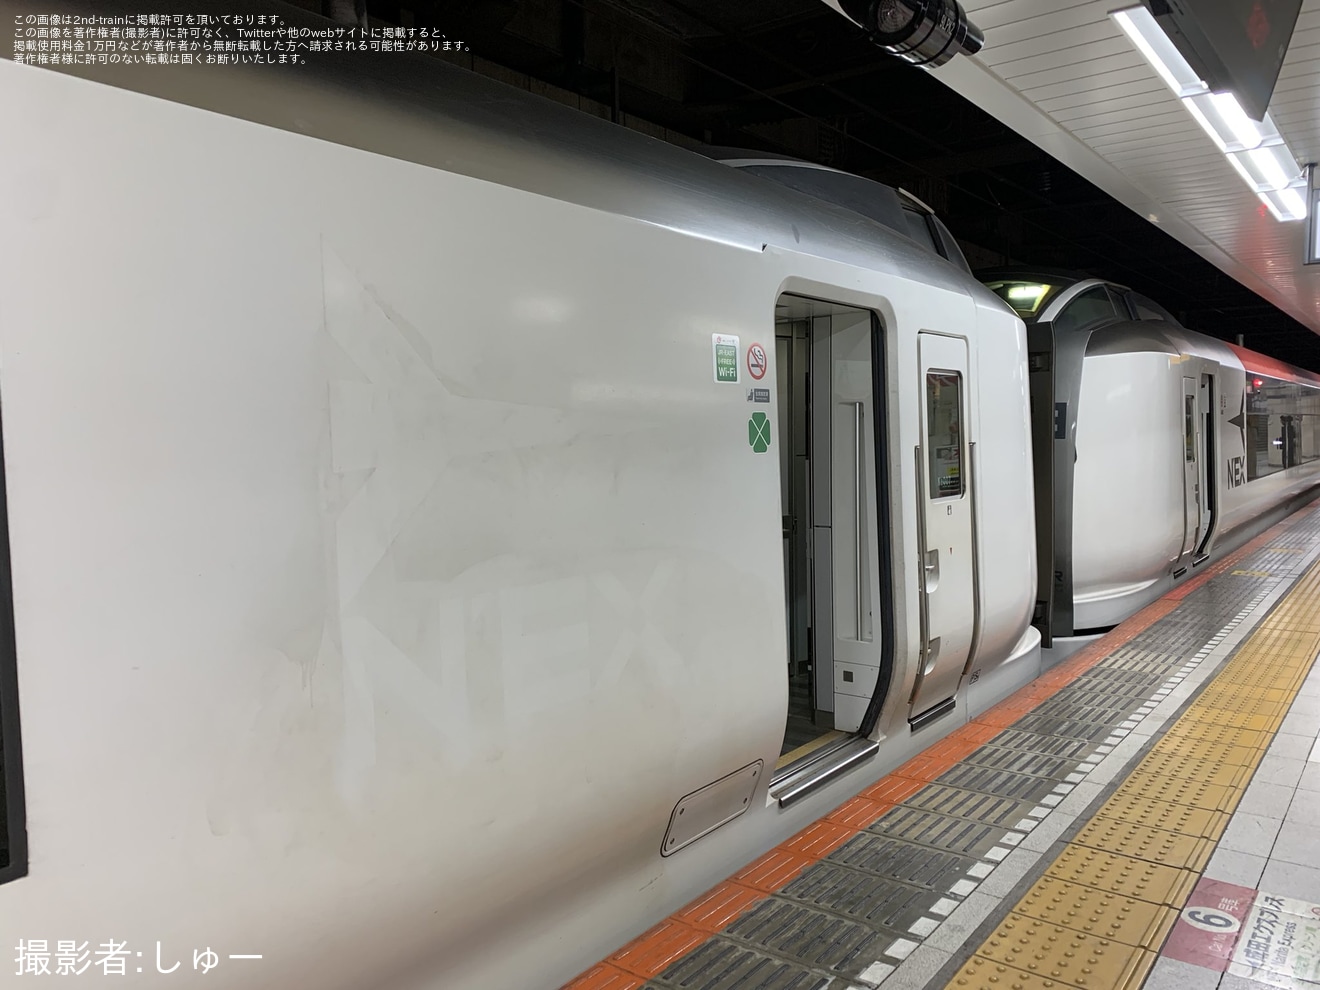 【JR東】E259系Ne007編成に存在していたNEX(成田エクスプレス)のロゴマークが剥がれた状態にの拡大写真